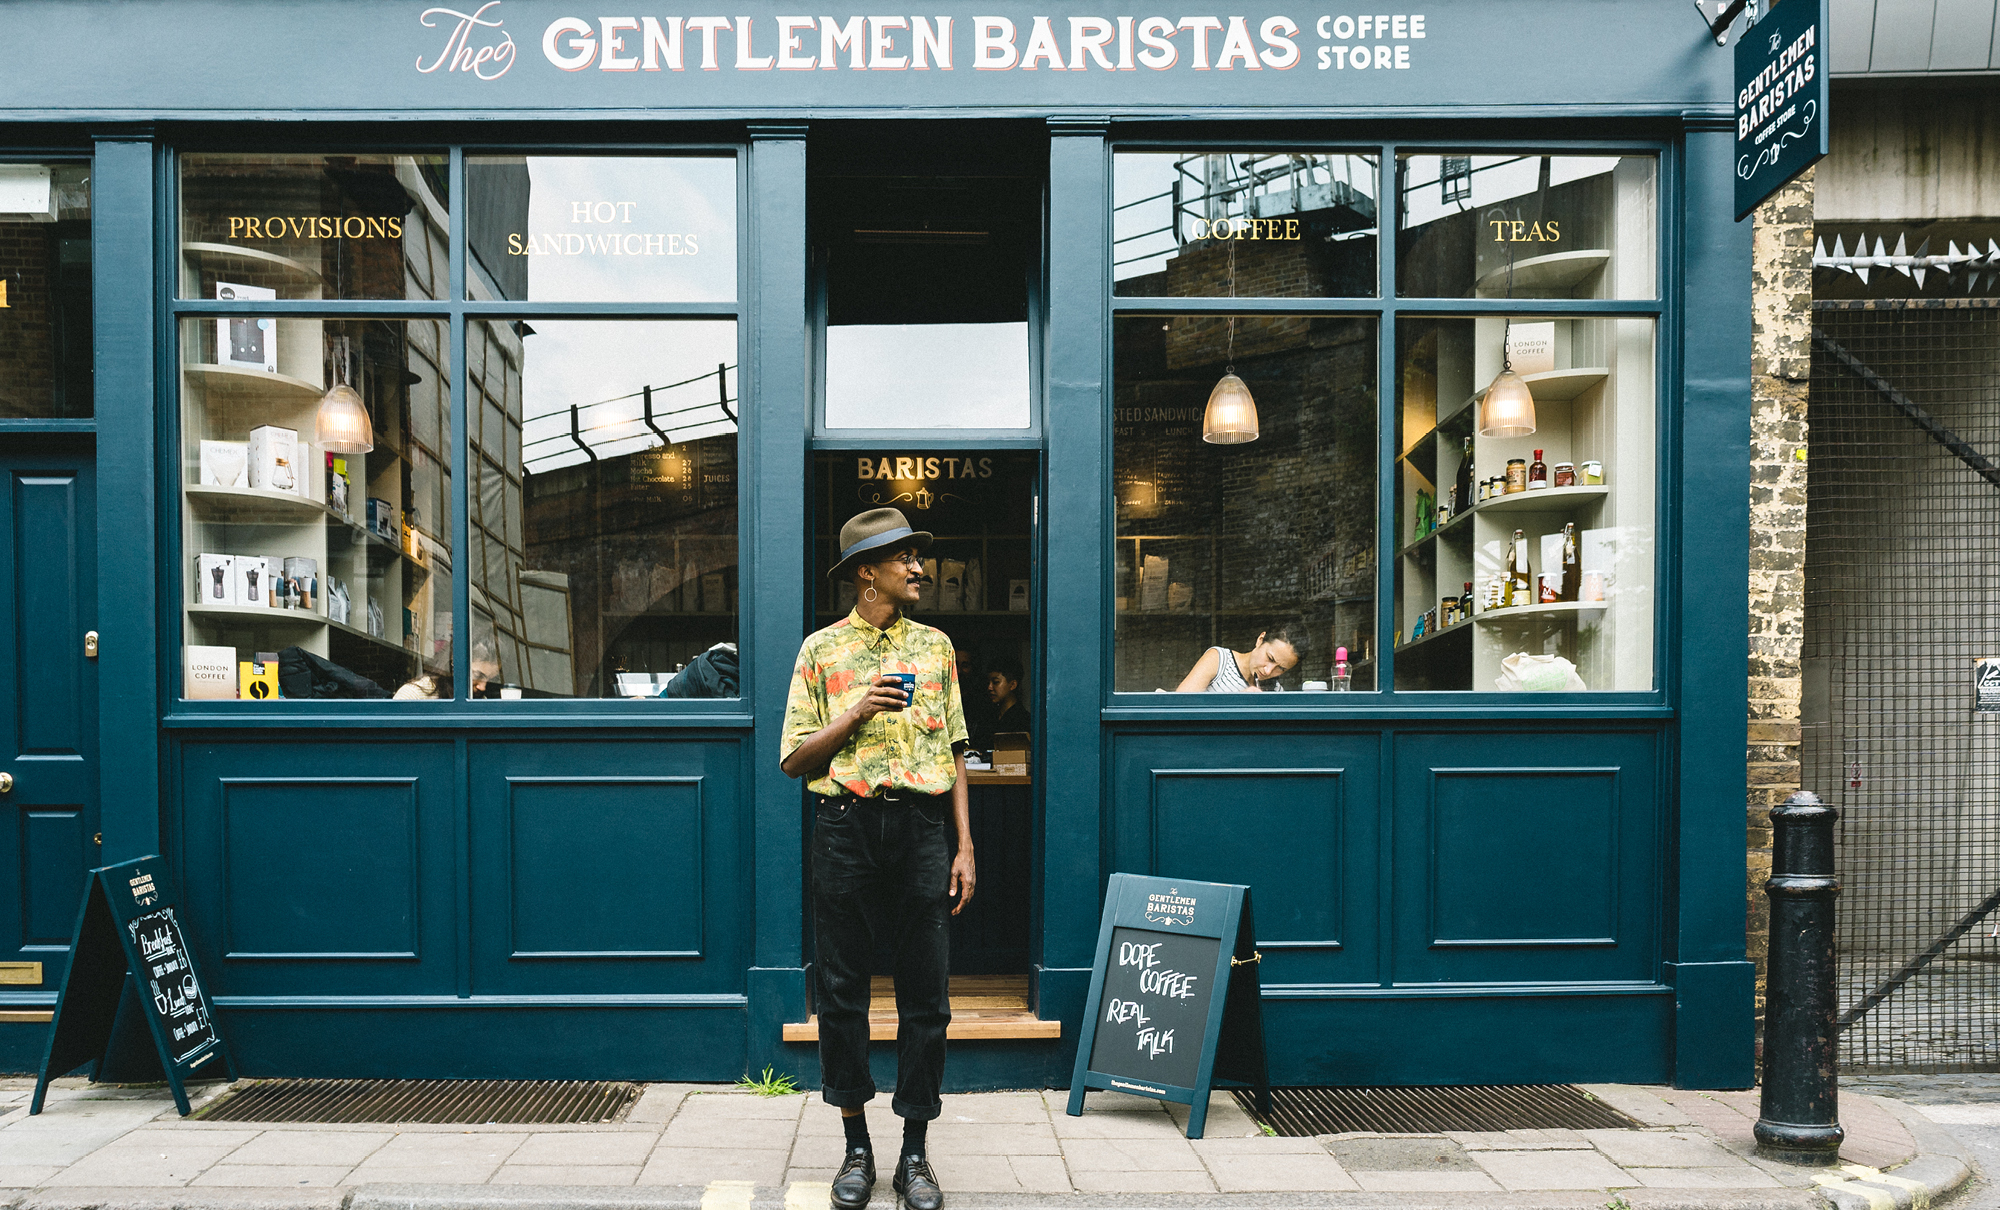 The Gentlemen Baristas' Coffee Store London Bridge